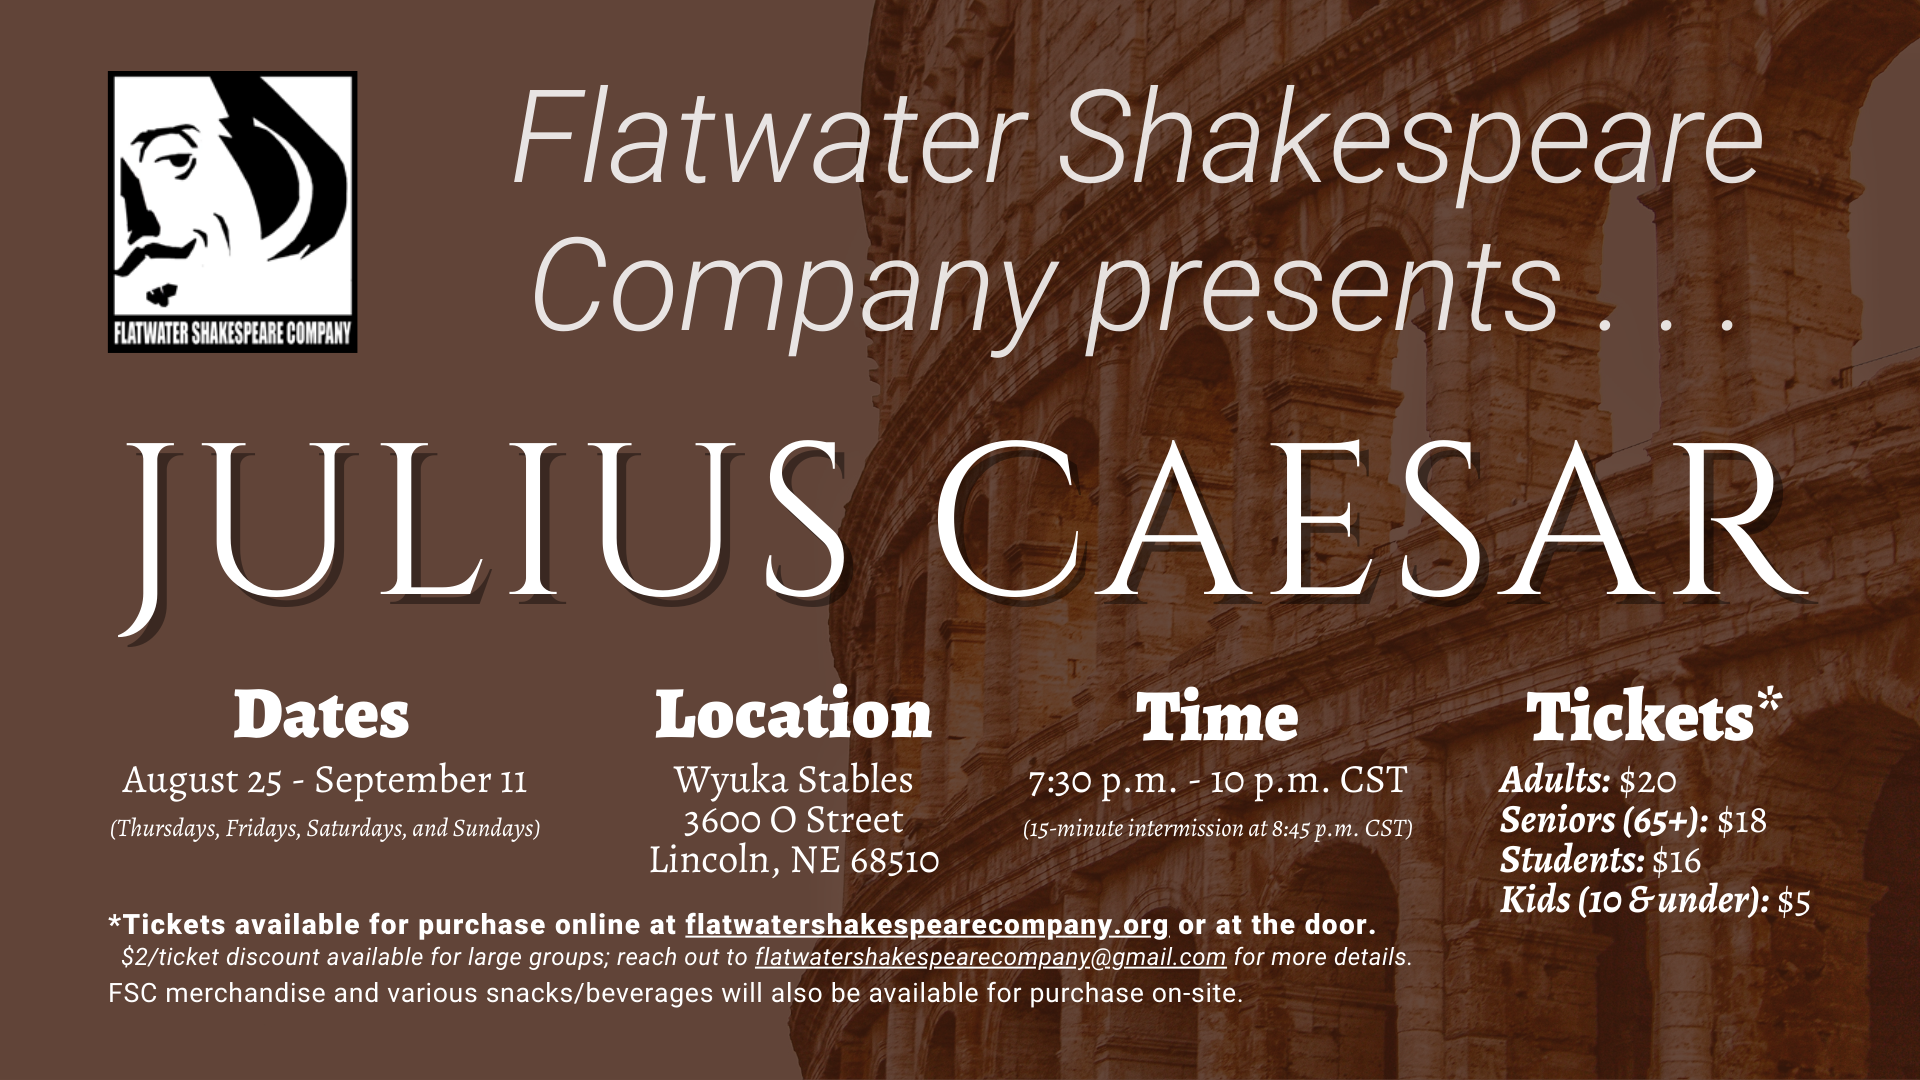 #10STU –– STUDENT: Fri. Sept. 9, 2022 | 7:30 p.m. - 10 p.m. CST | Wyuka Stables (Julius Caesar)